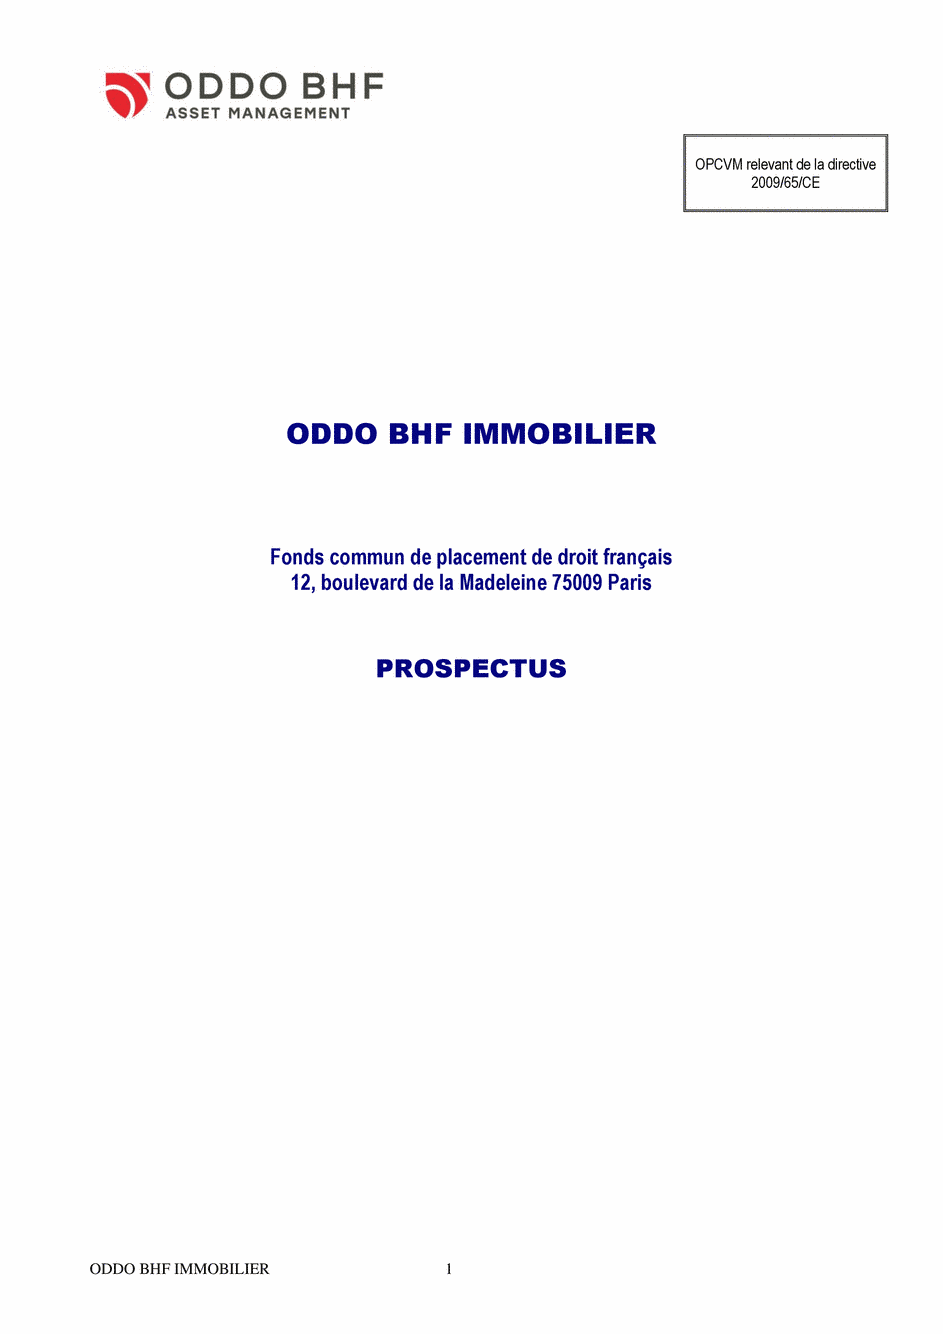 Prospectus ODDO BHF IMMOBILIER CN-EUR - 15/07/2020 - Français